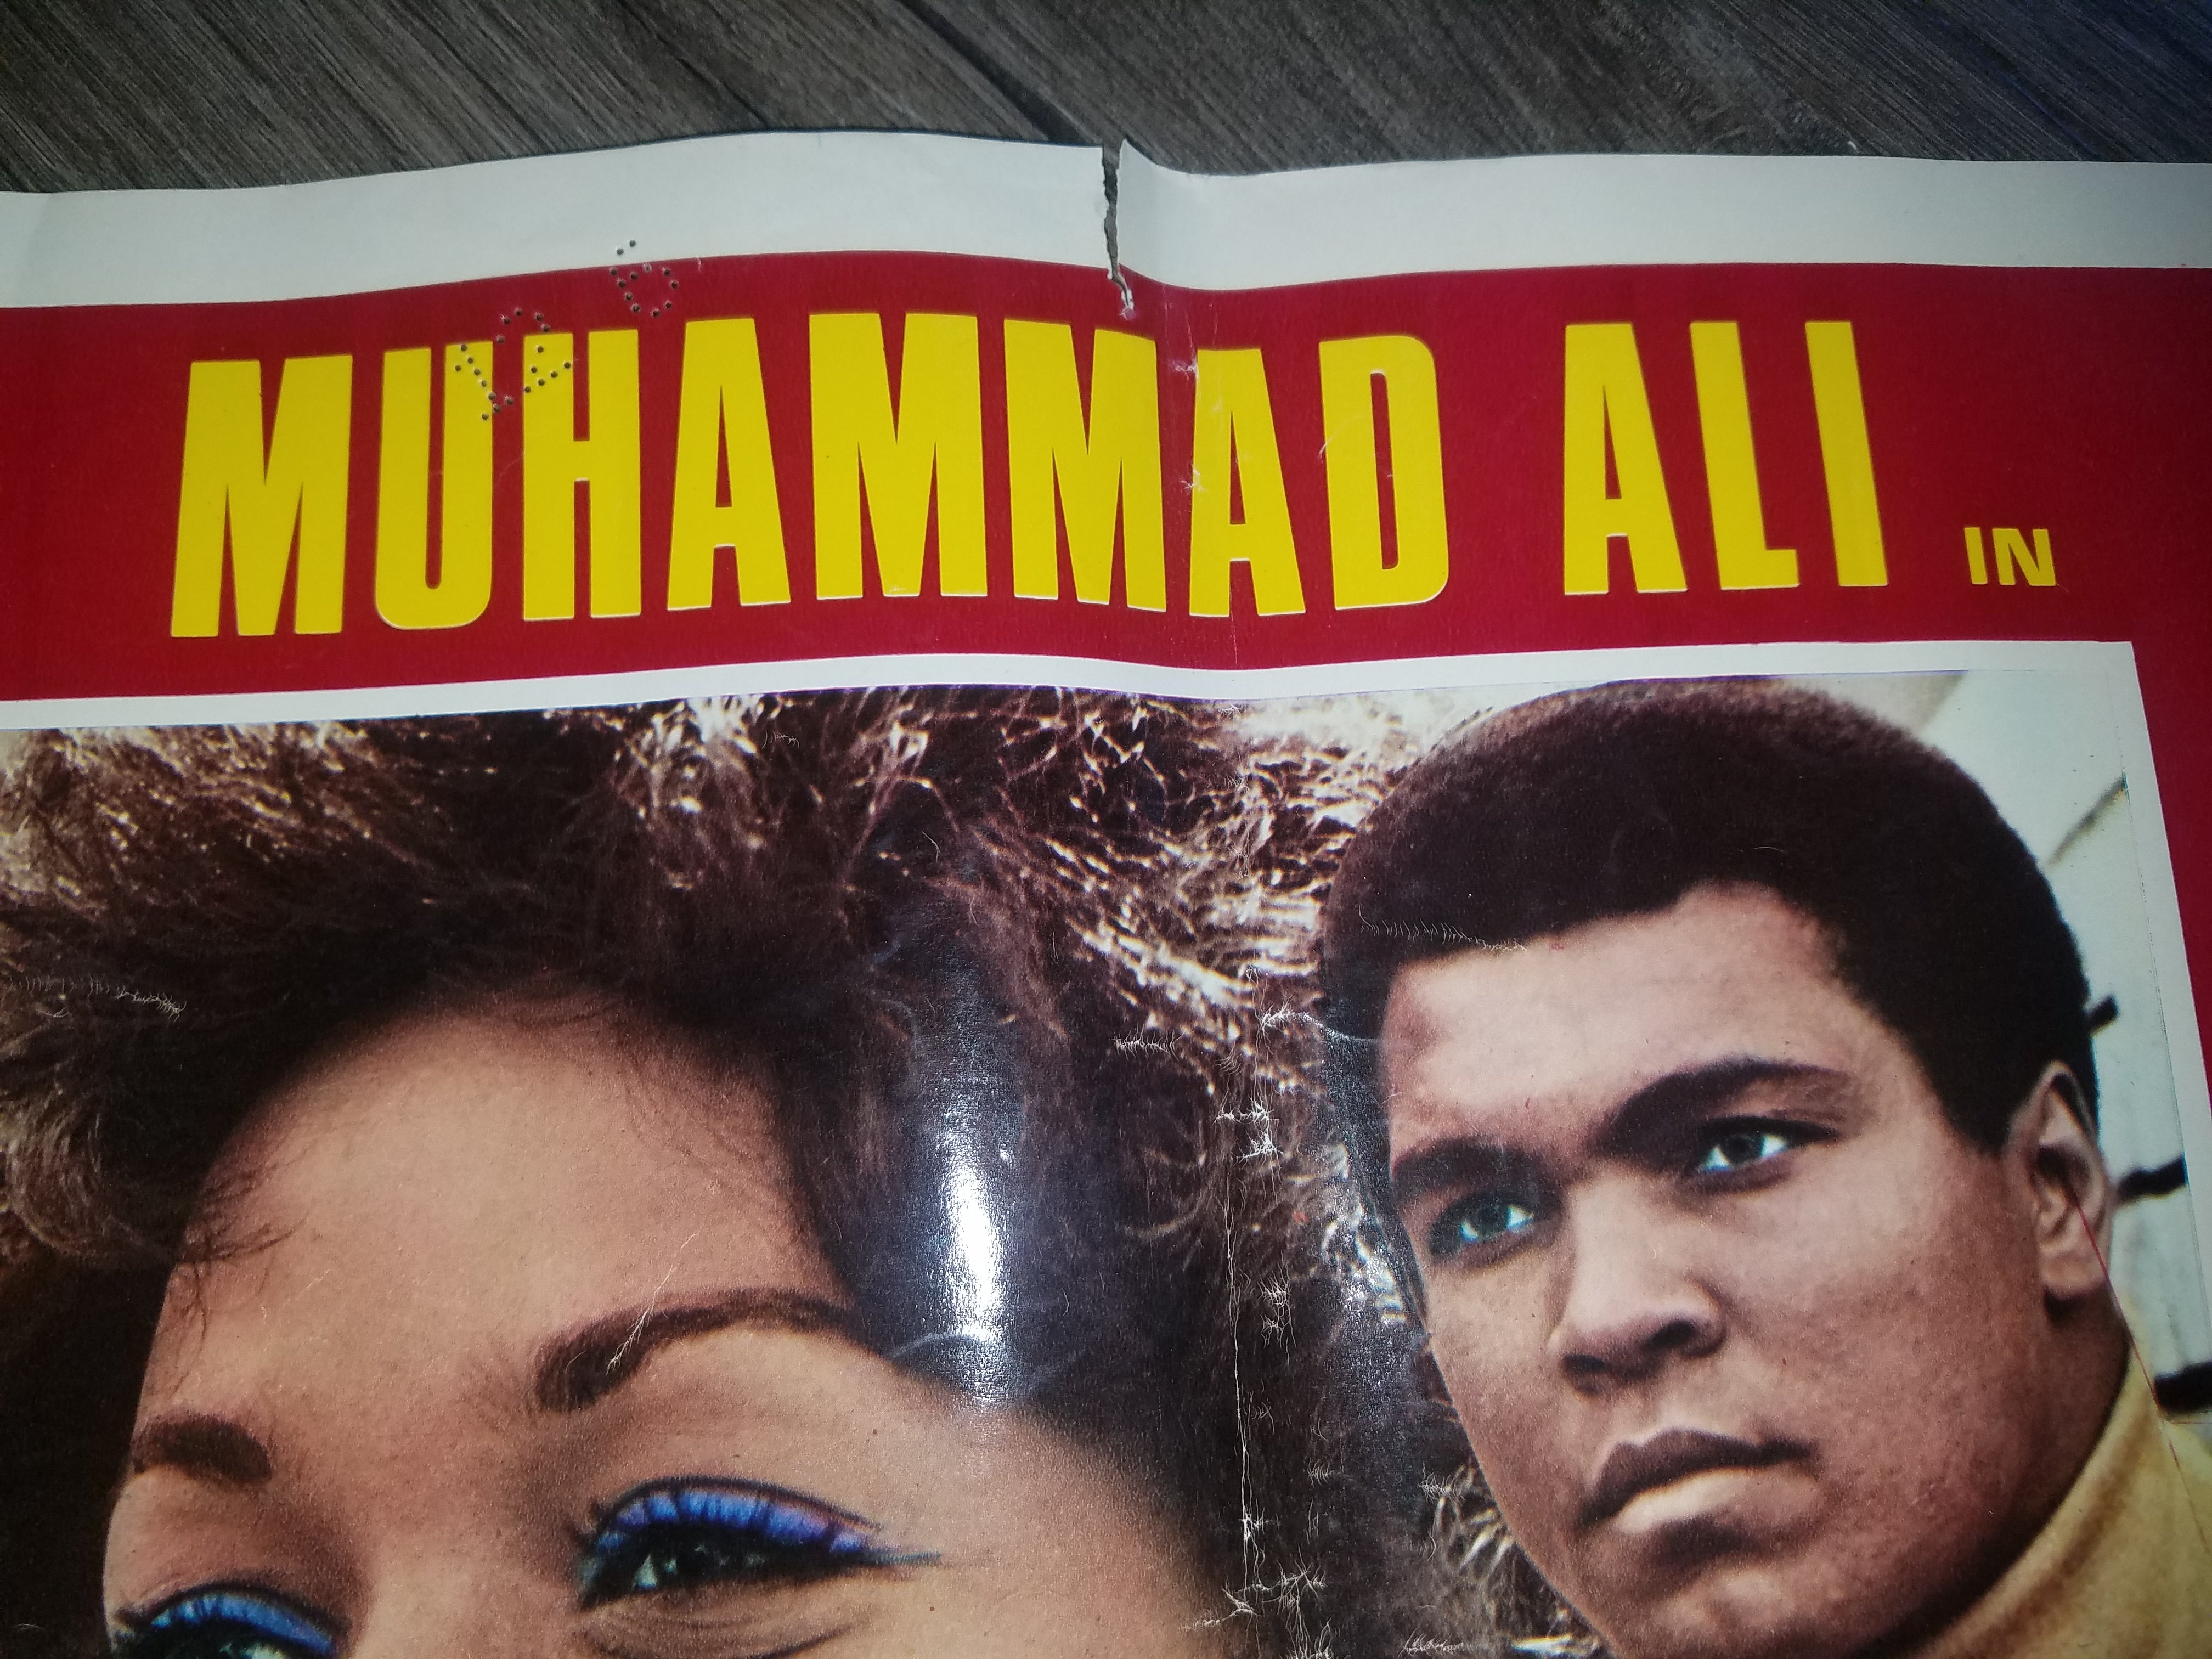 Title:  FOTOBUSTA IO SONO IL PIù GRANDE MUHAMMAD ALI PUGILATO 1977 (I Am The Greatest)  Edition:  Muhammad Ali Movie Poster  Notes:  OK Condition and ready to ship